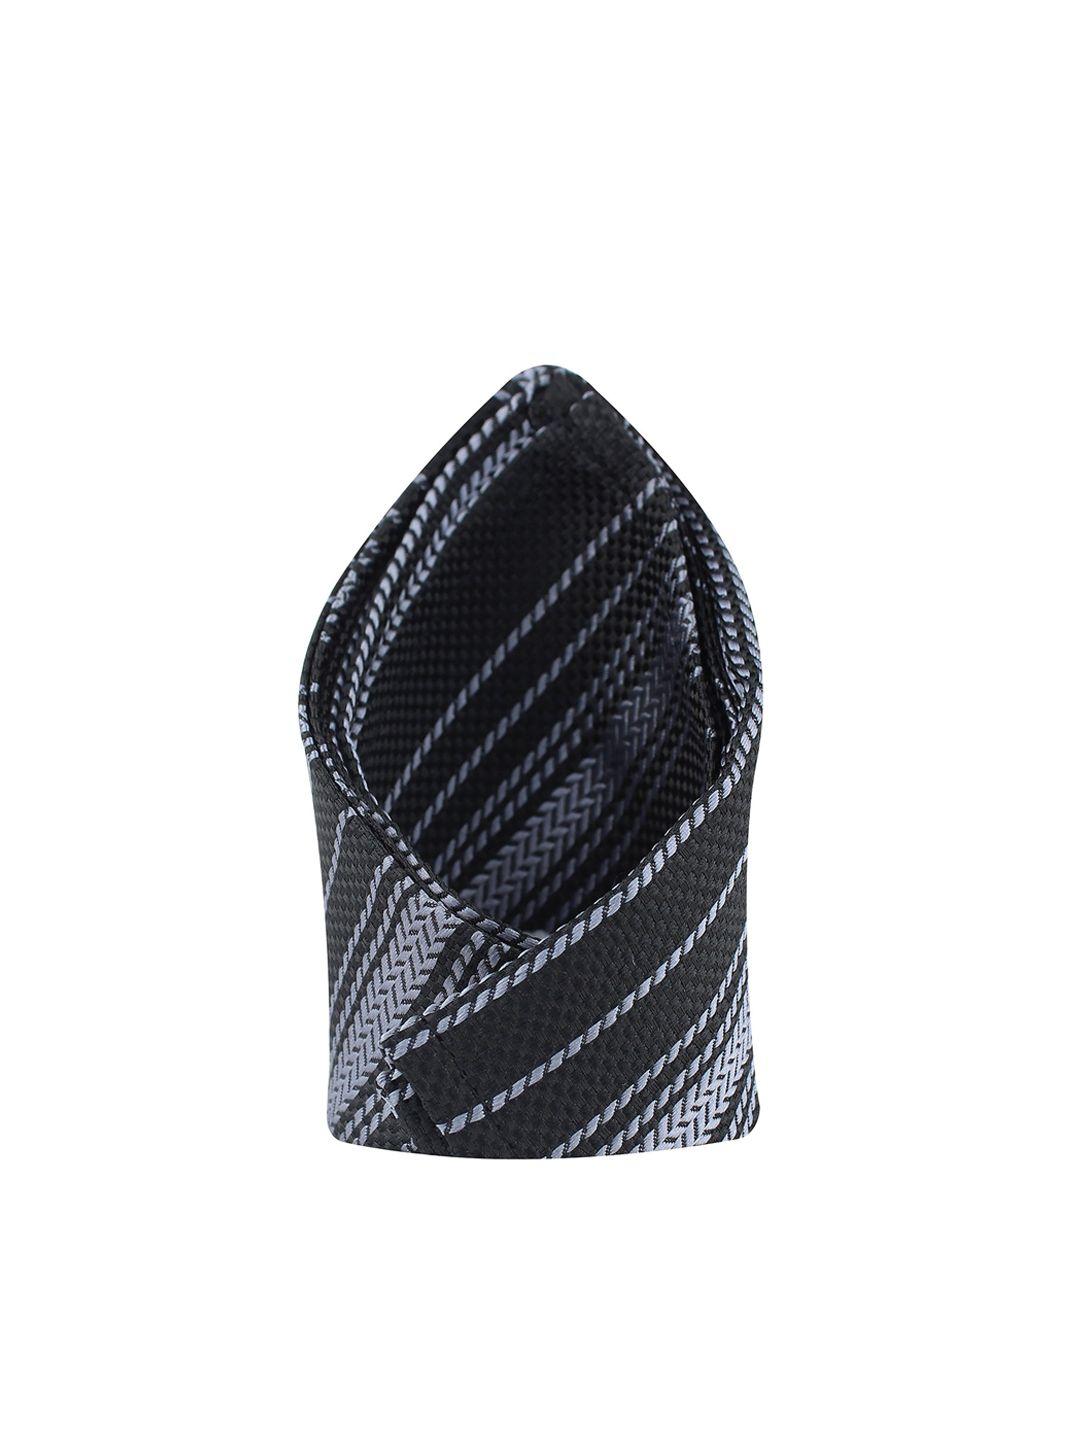 kovove black & grey striped pocket square